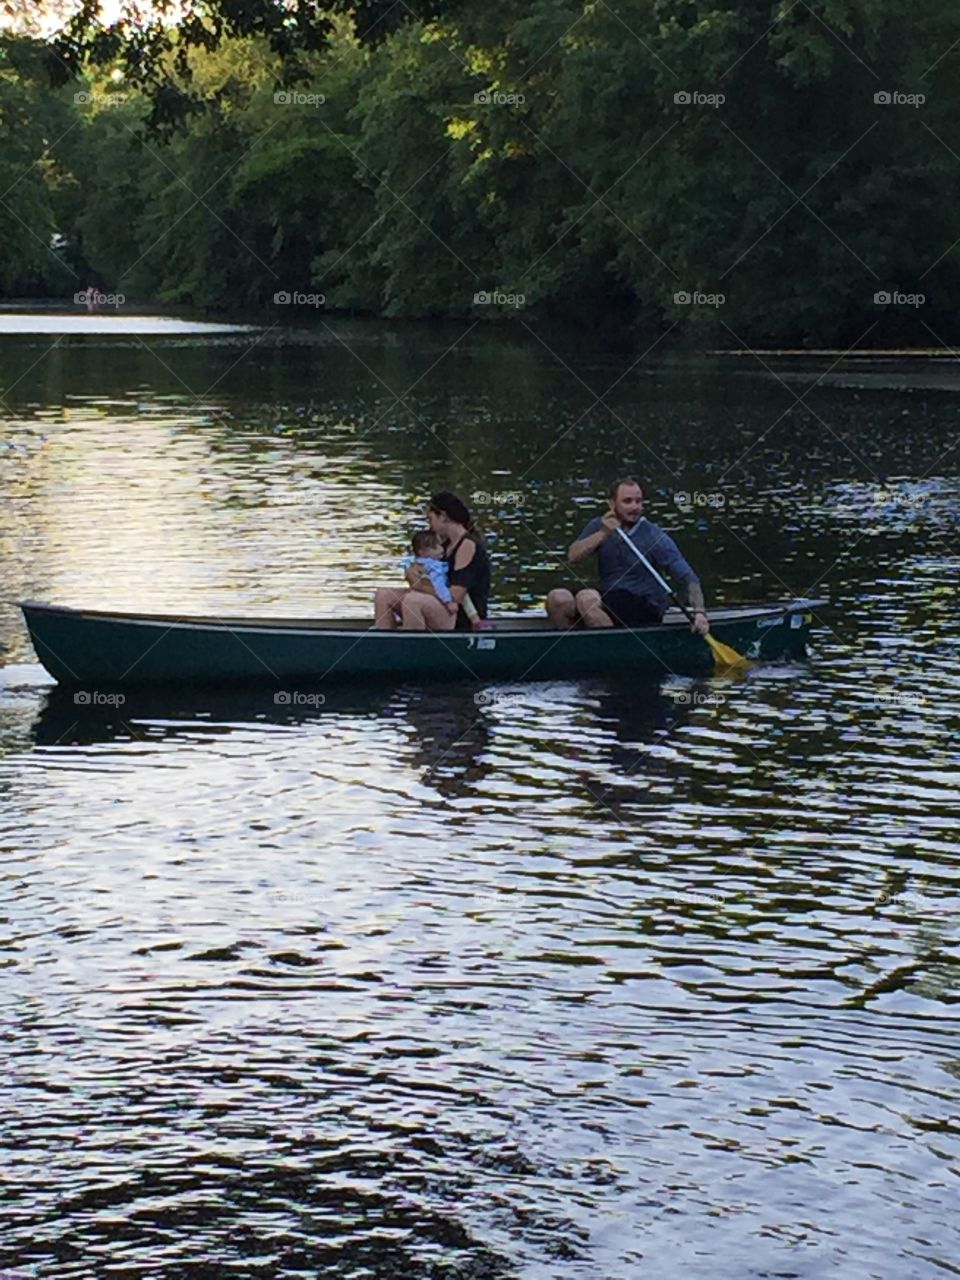 Family enjoying boating in lake